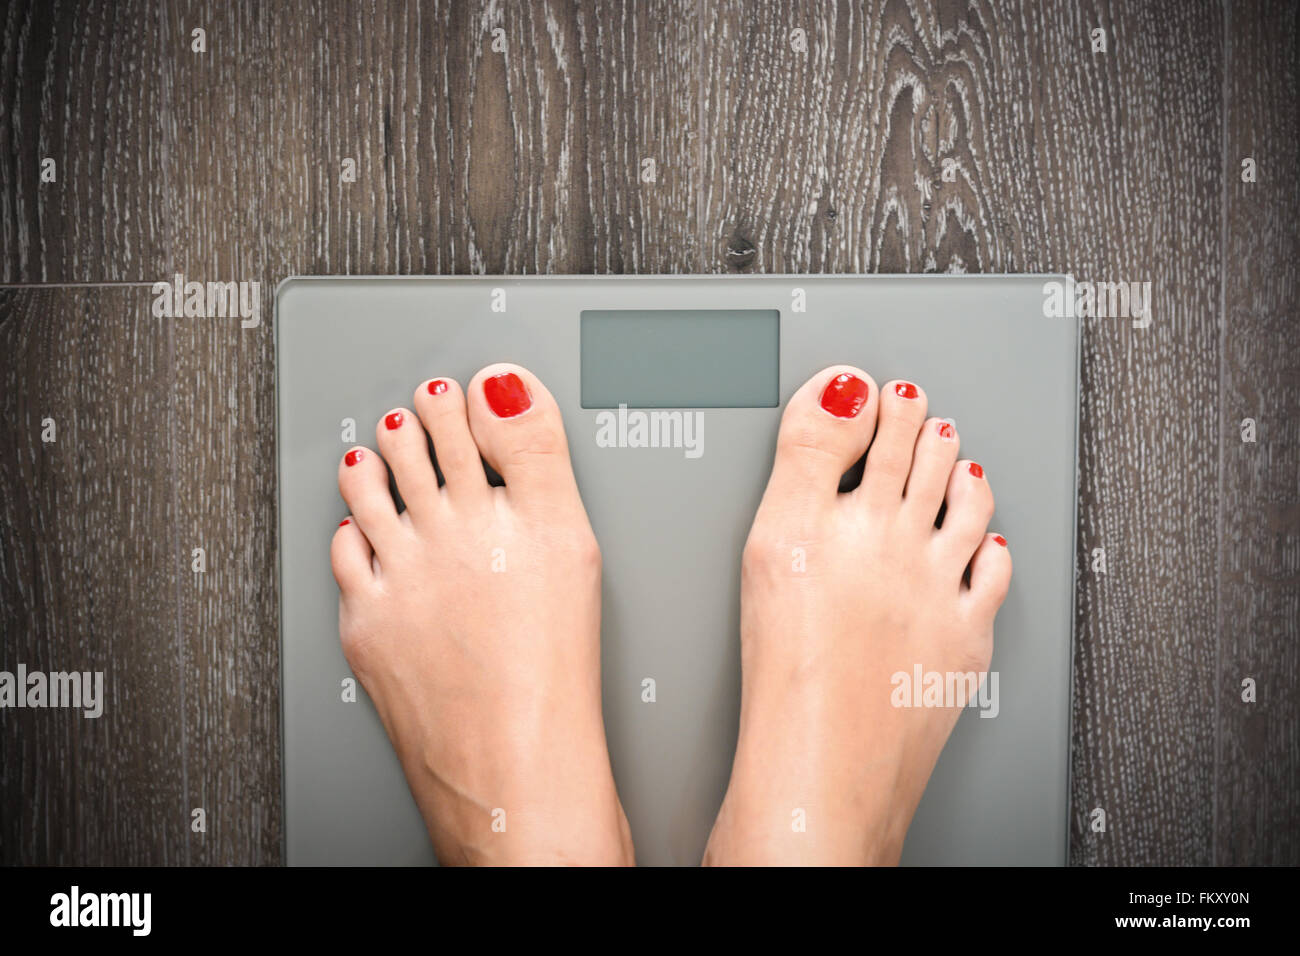 Perdre du poids ou suivre un régime concept avec personne sur une échelle mesurant le kilogrammes Banque D'Images